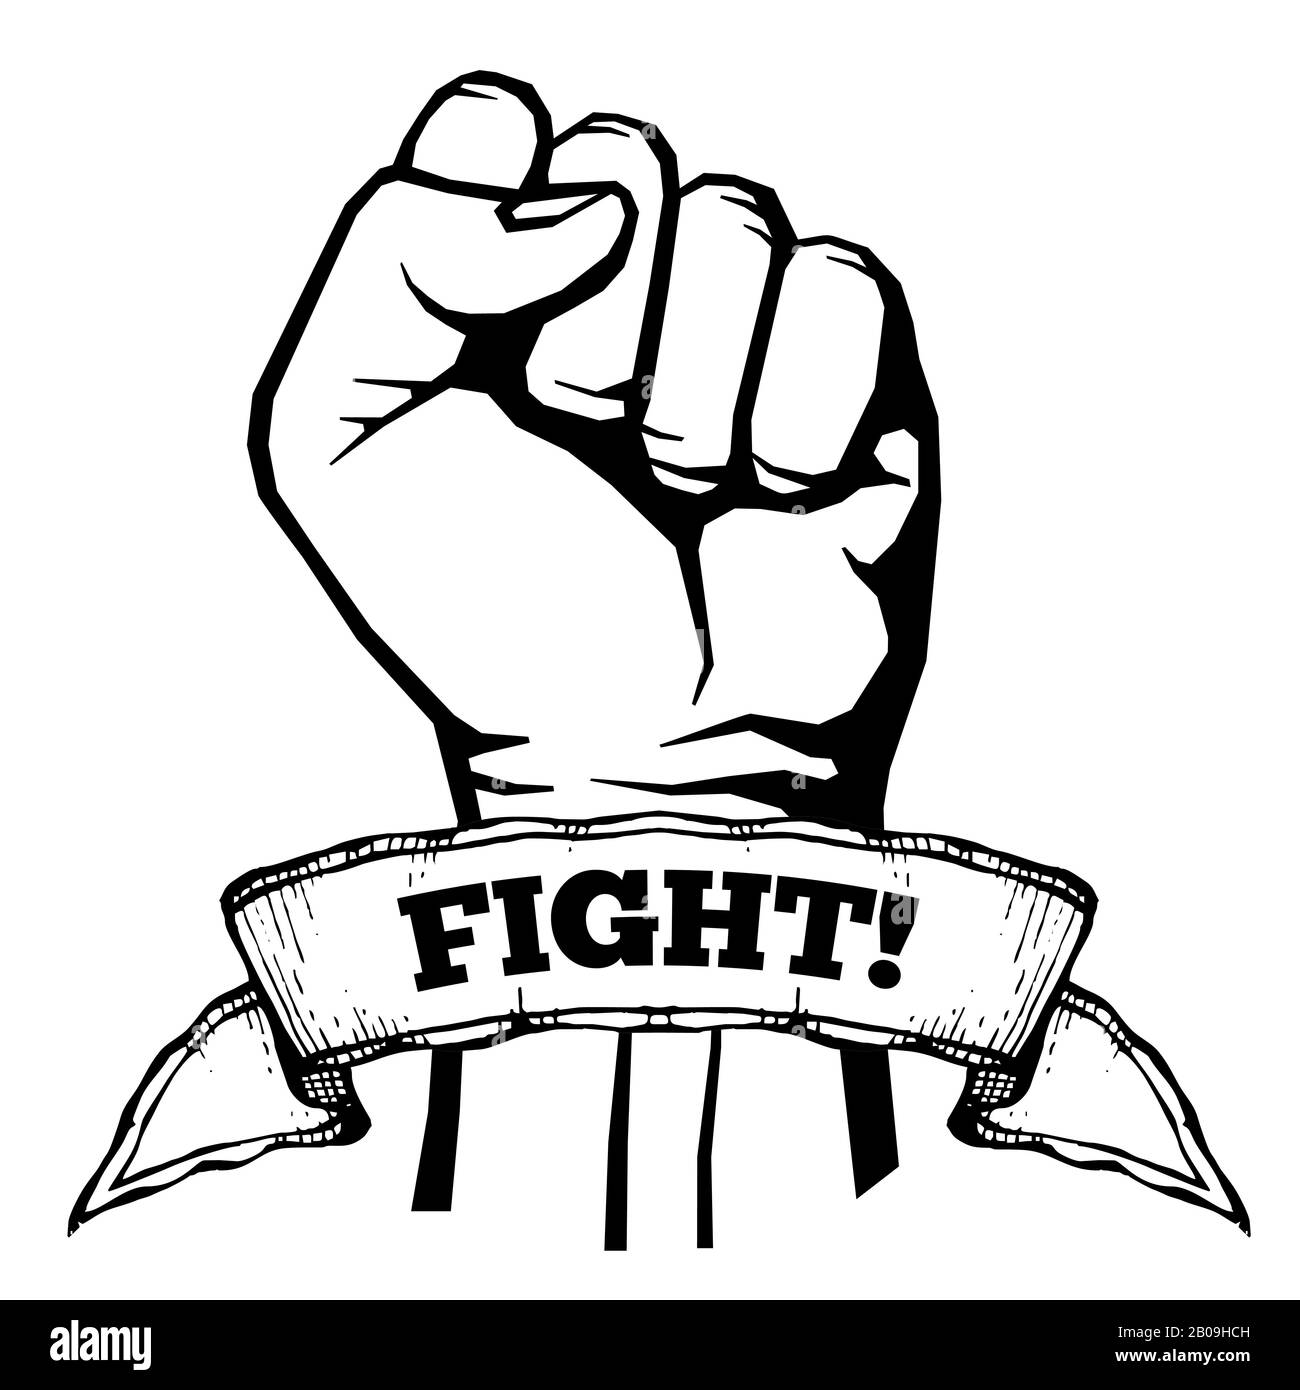 Kämpfen Sie für Ihre Rechte, Solidarität, Revolution Vektor Poster. Aggressive Stanzung starke Abbildung Stock Vektor